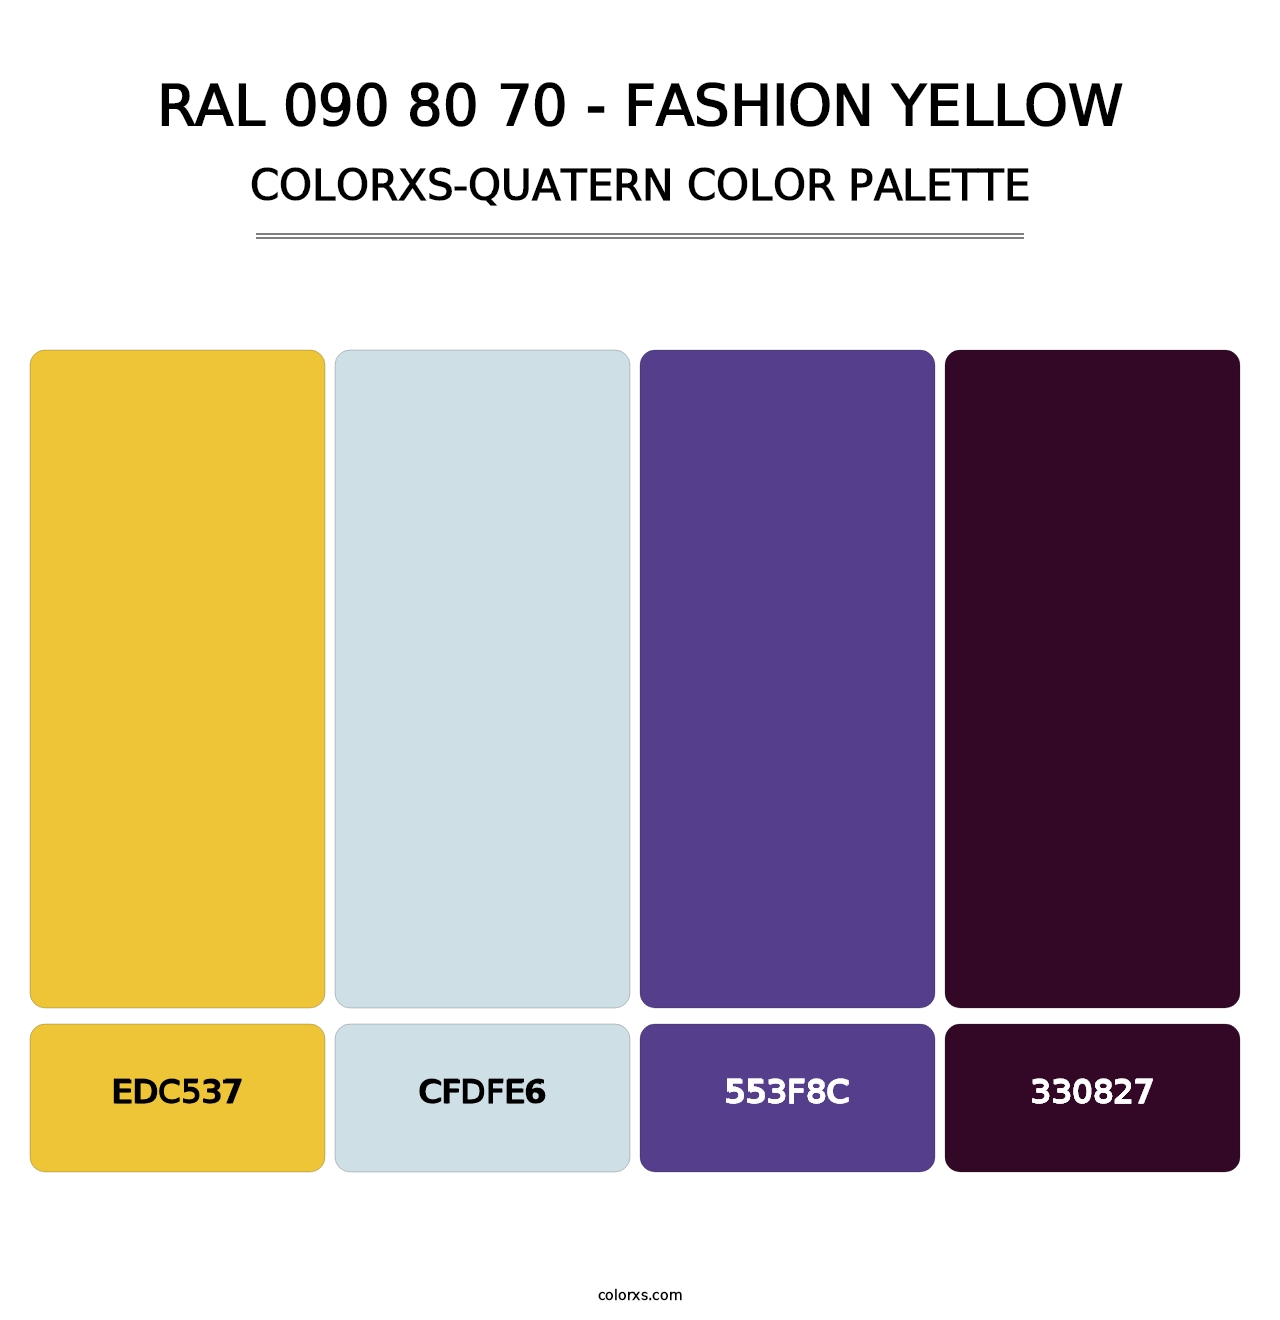 RAL 090 80 70 - Fashion Yellow - Colorxs Quatern Palette